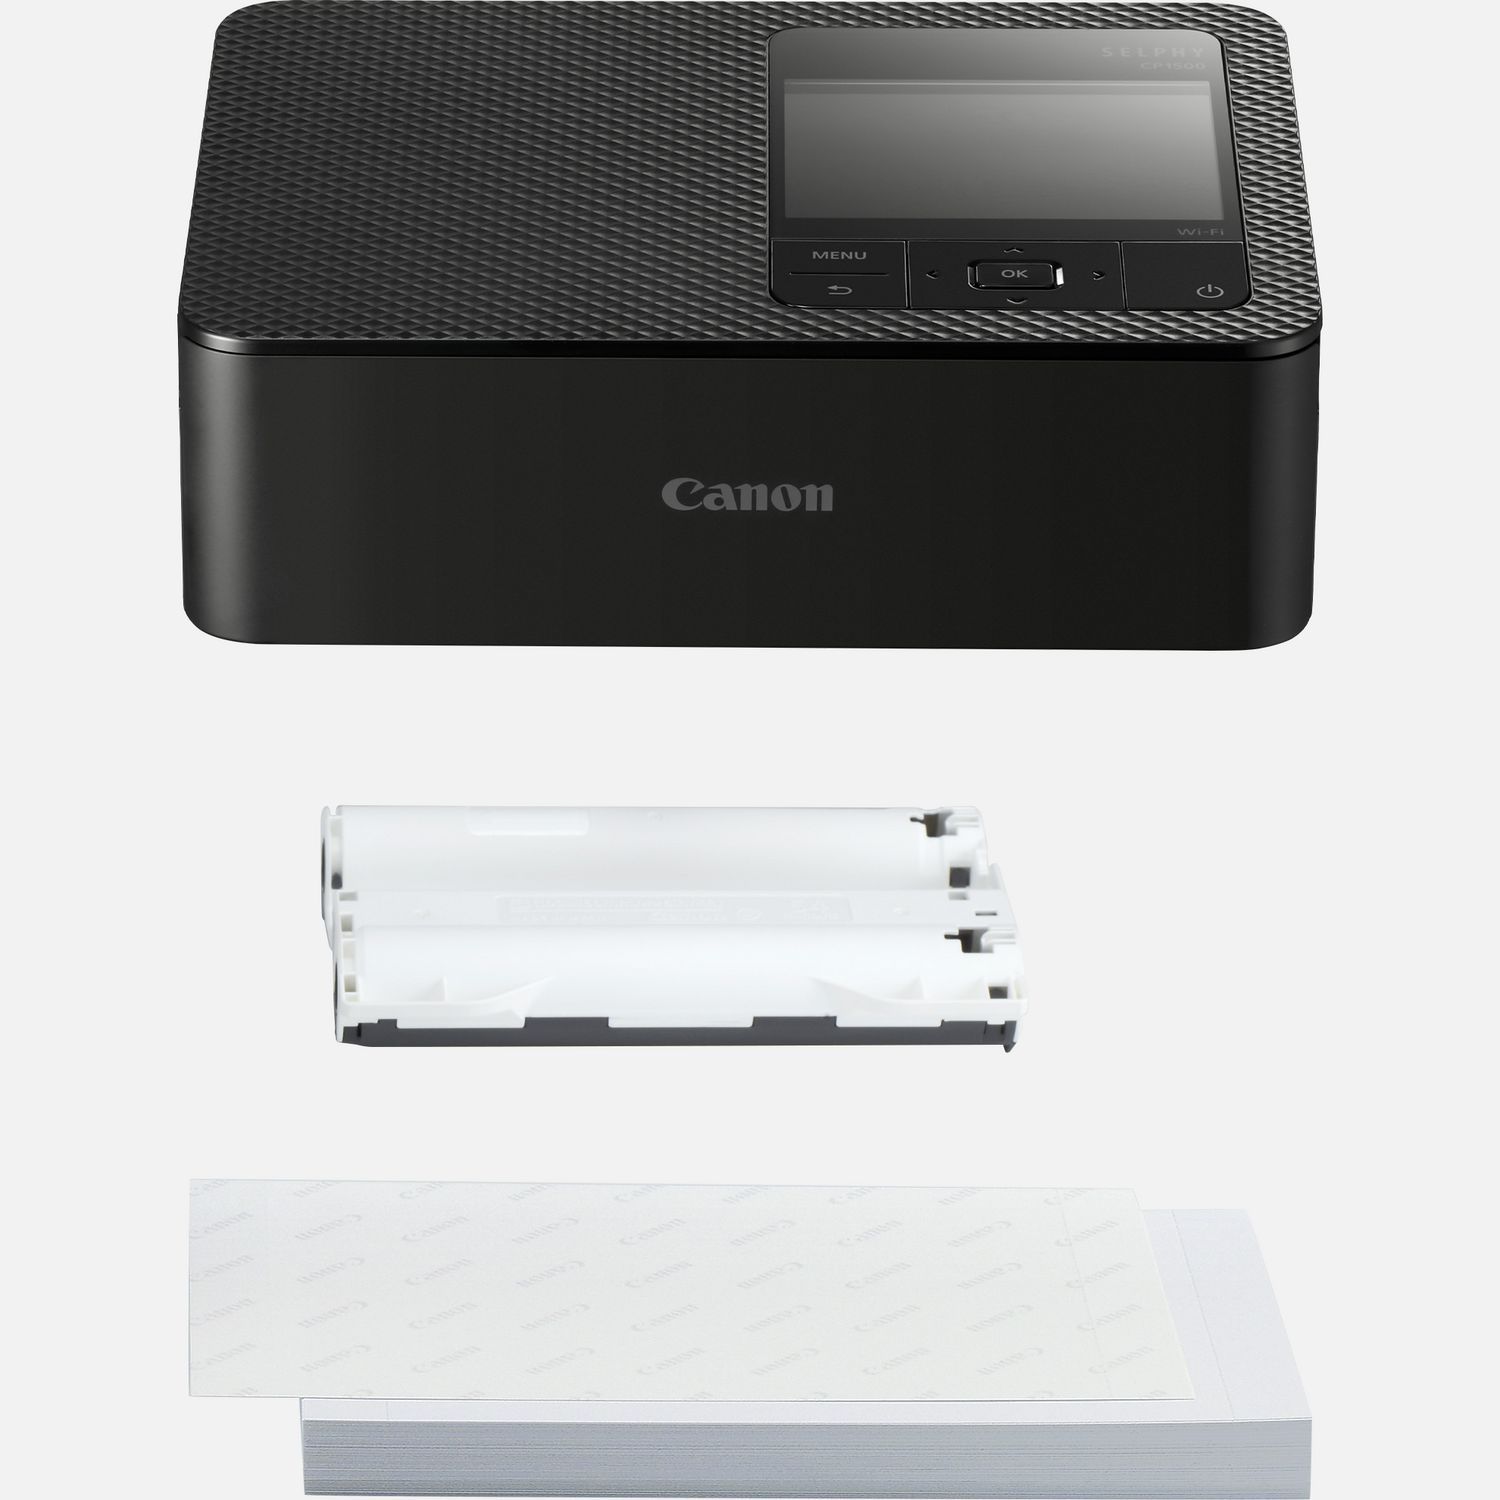 Encre, toner et papier pour SELPHY CP1500 — Boutique Canon Suisse